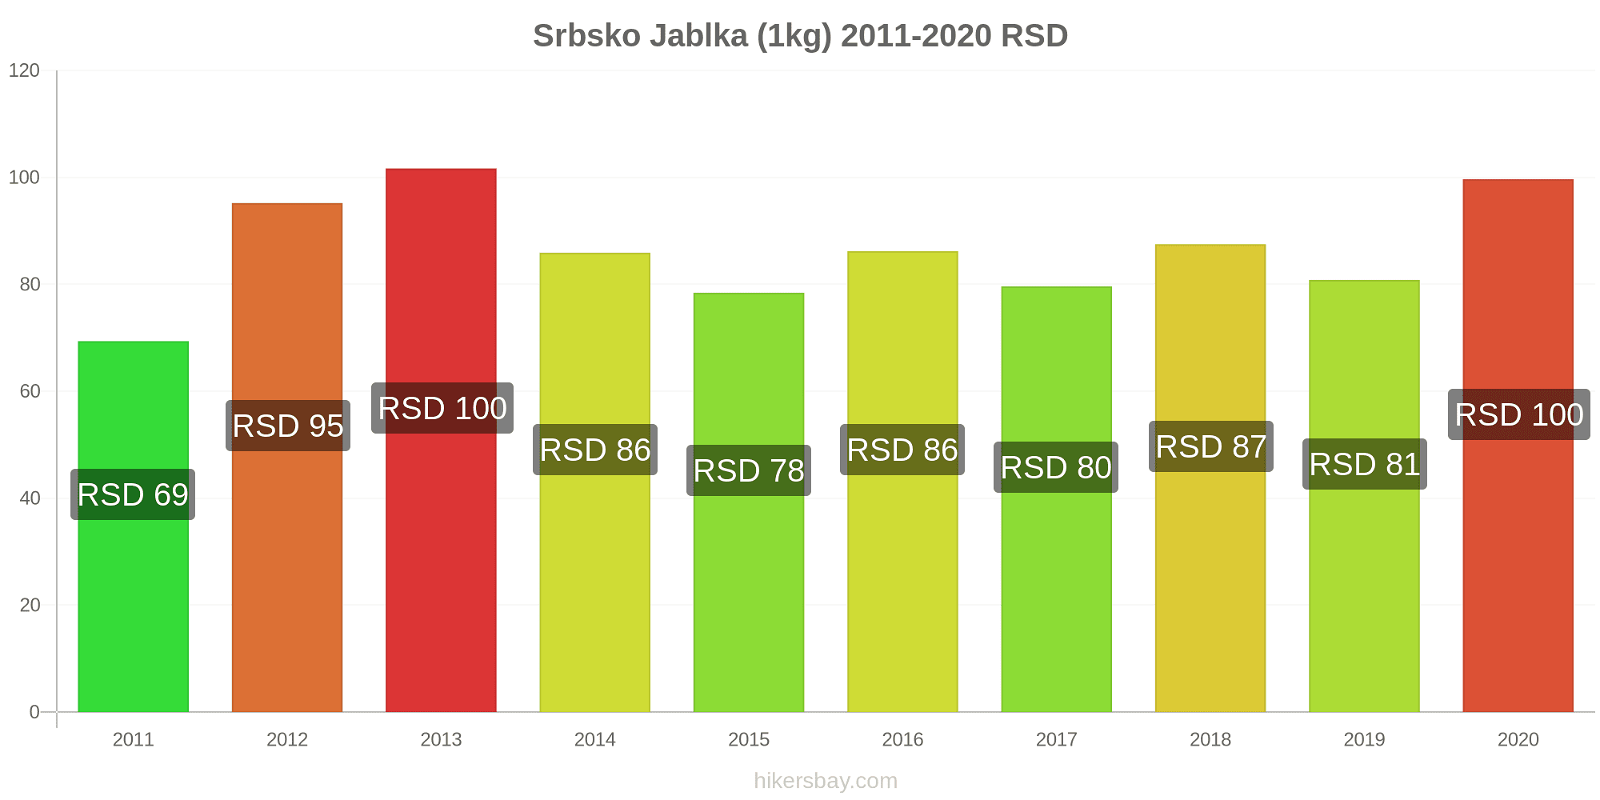 Srbsko změny cen Jablka (1kg) hikersbay.com